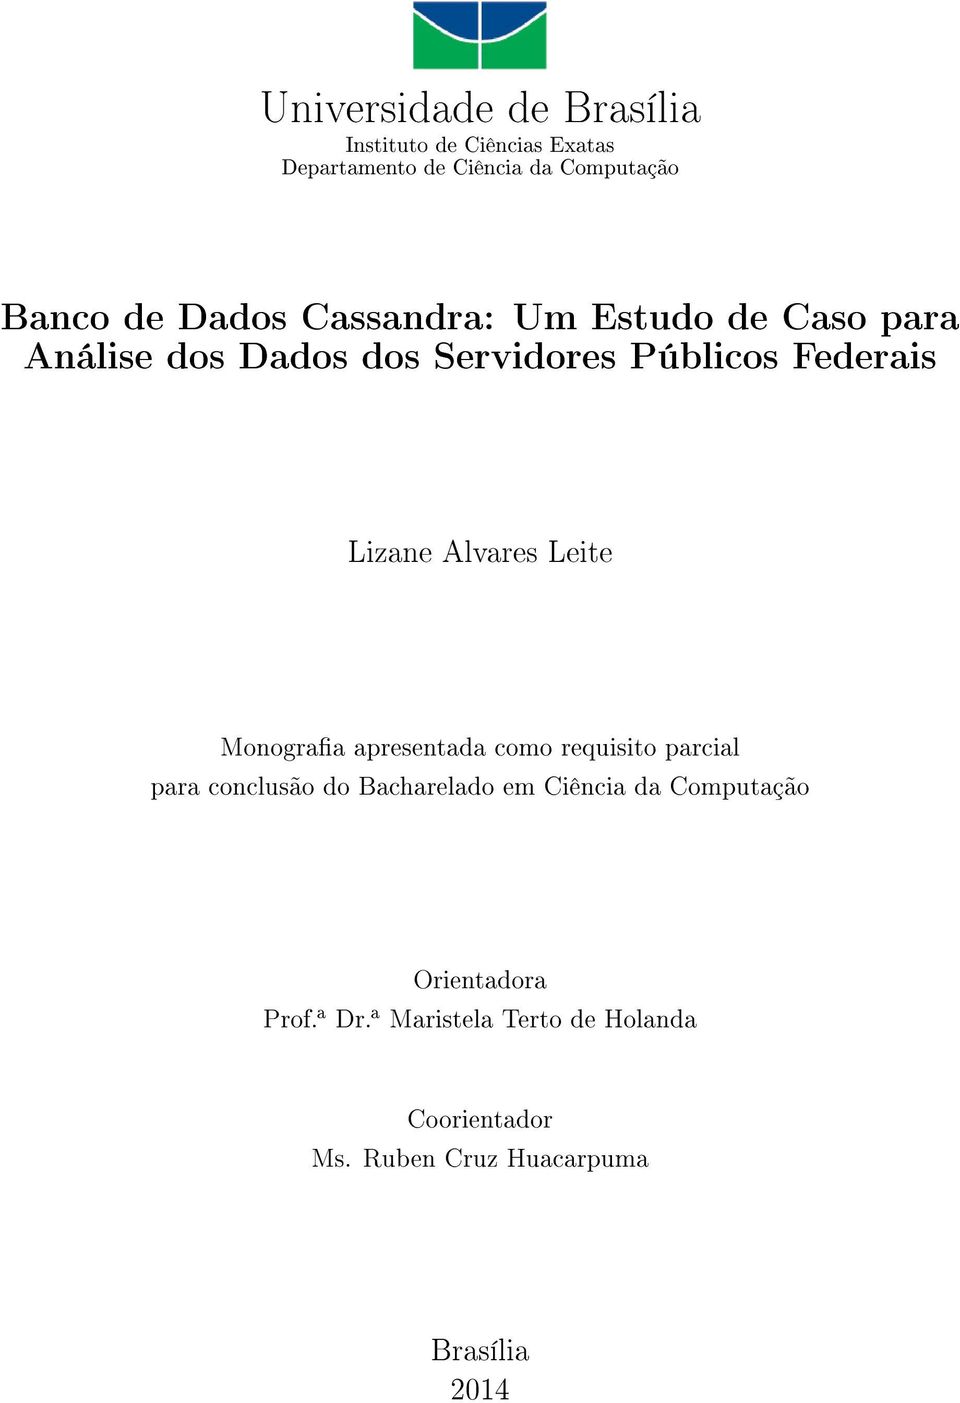 Alvares Leite Monograa apresentada como requisito parcial para conclusão do Bacharelado em Ciência da